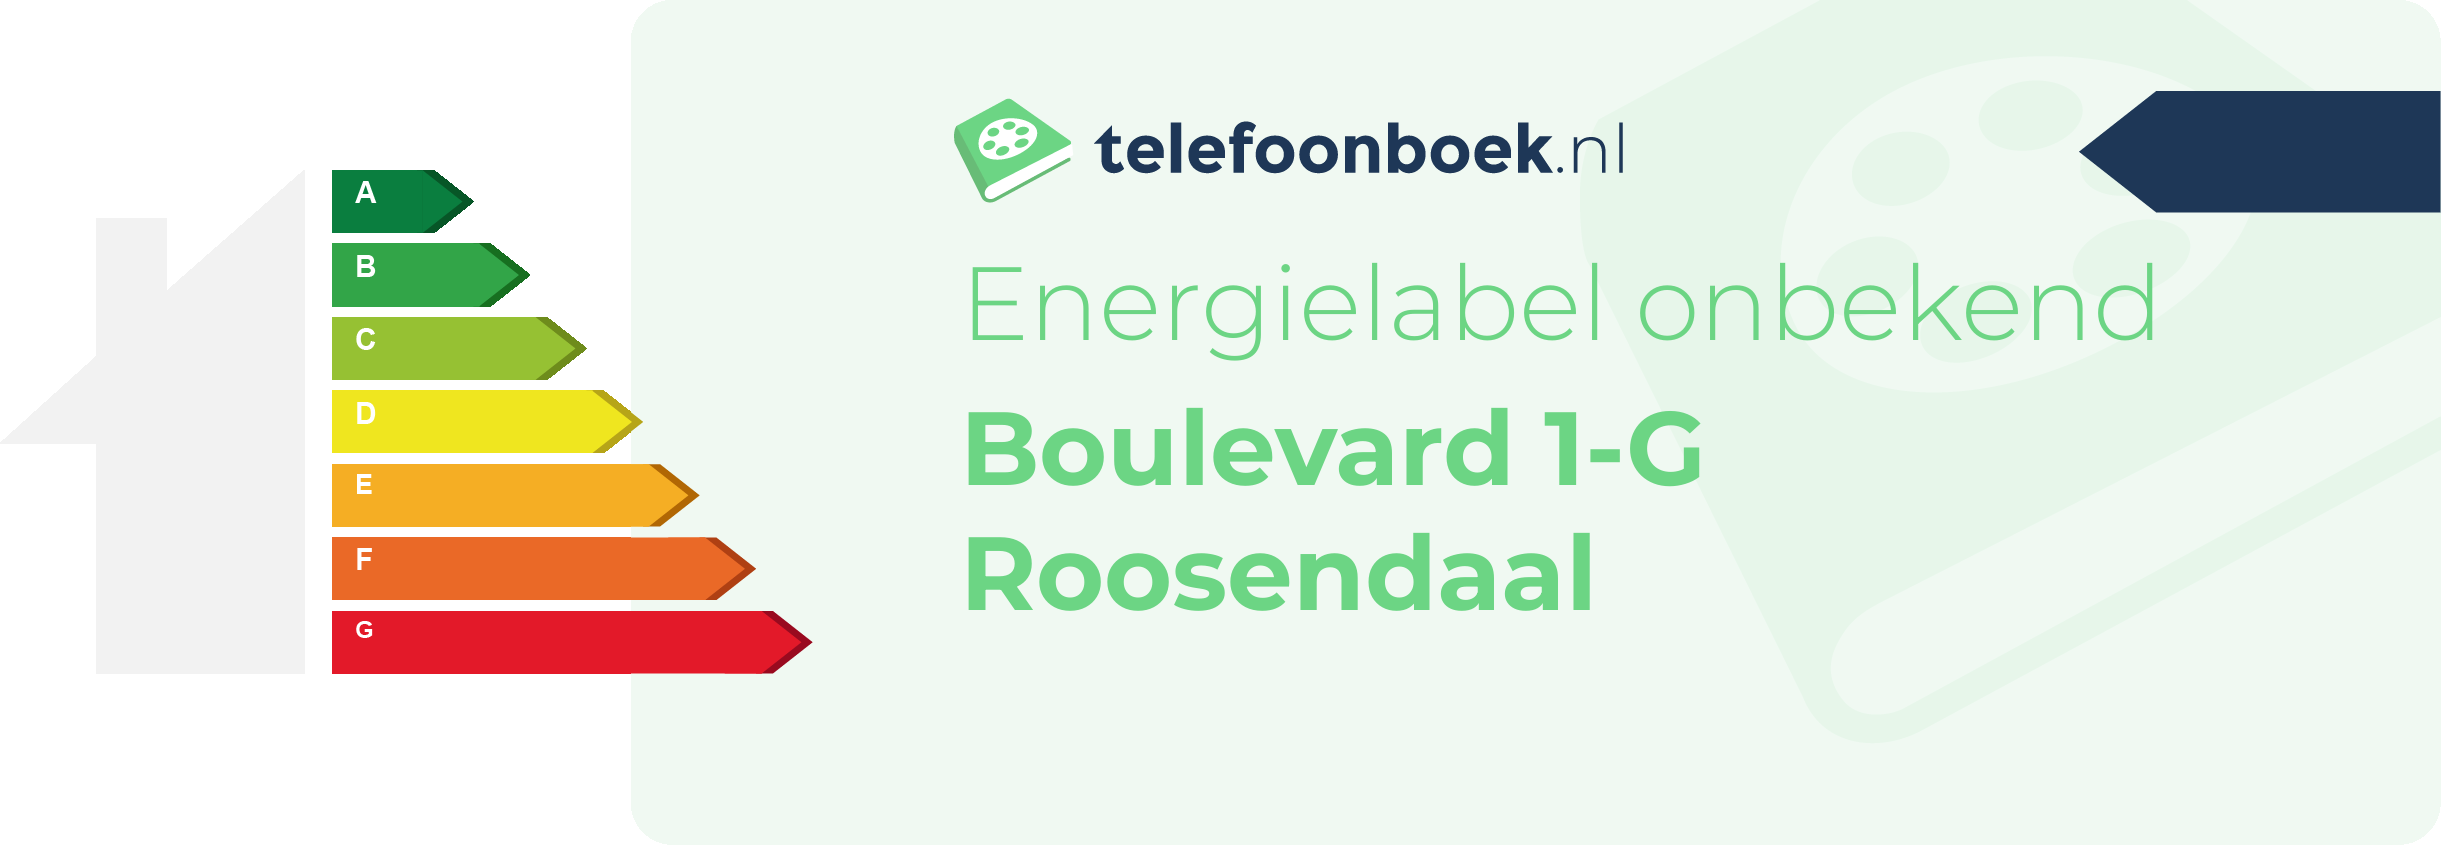 Energielabel Boulevard 1-G Roosendaal